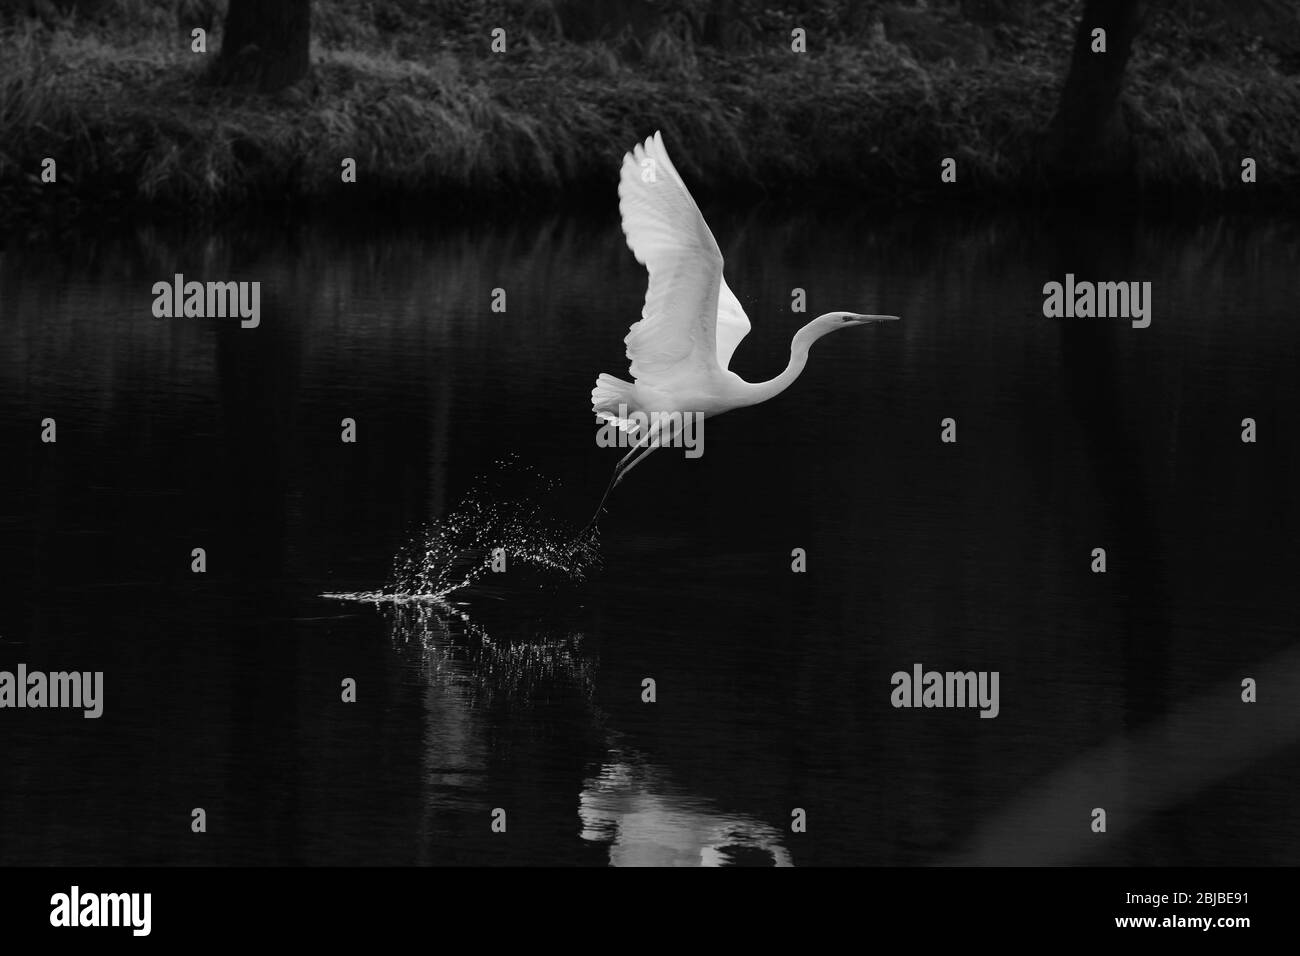 noir et blanc, le moment où un aigrette (héron blanc) vole juste au-dessus de l'eau Banque D'Images